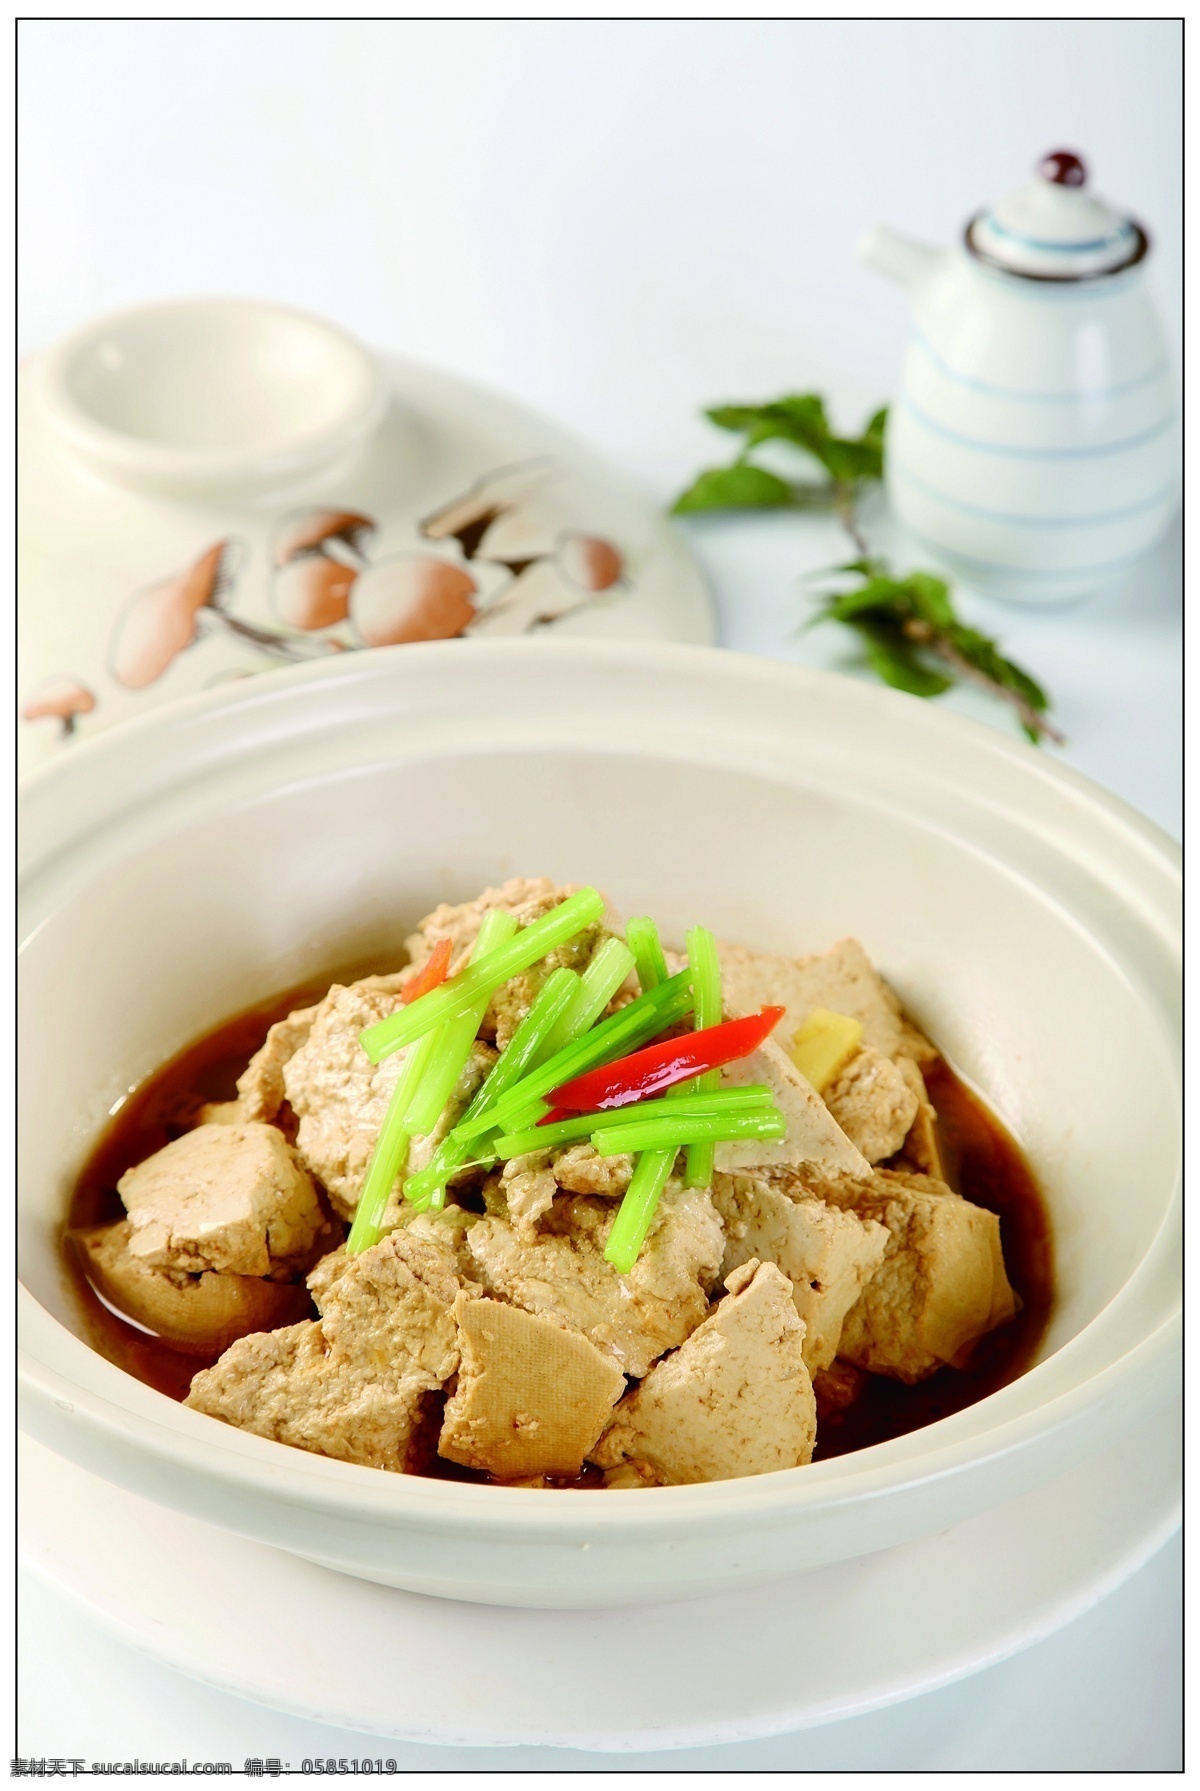 减脂期秋冬最爱低脂低卡砂锅豆腐 超简单有手就会做 - 哔哩哔哩